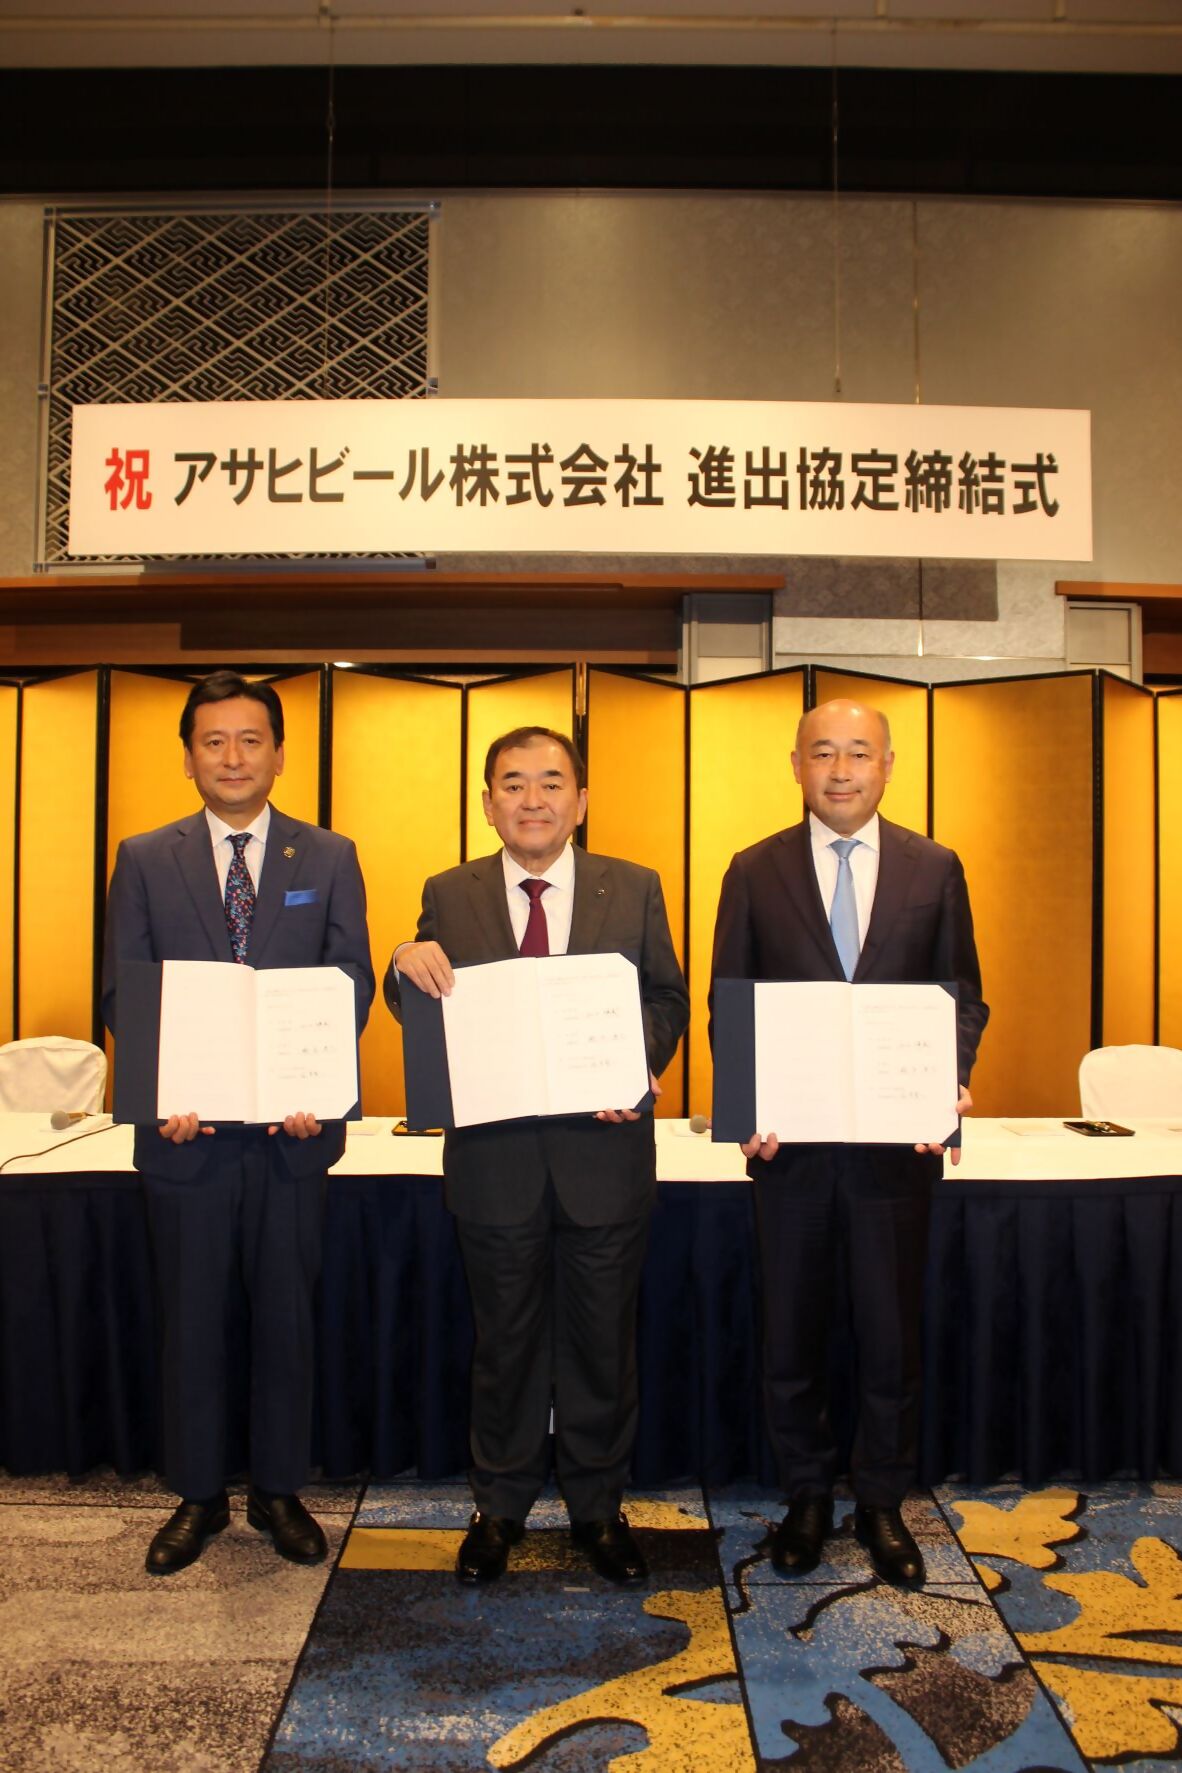 アサヒビール株式会社、佐賀県及び鳥栖市の三者による進出協定を締結しました